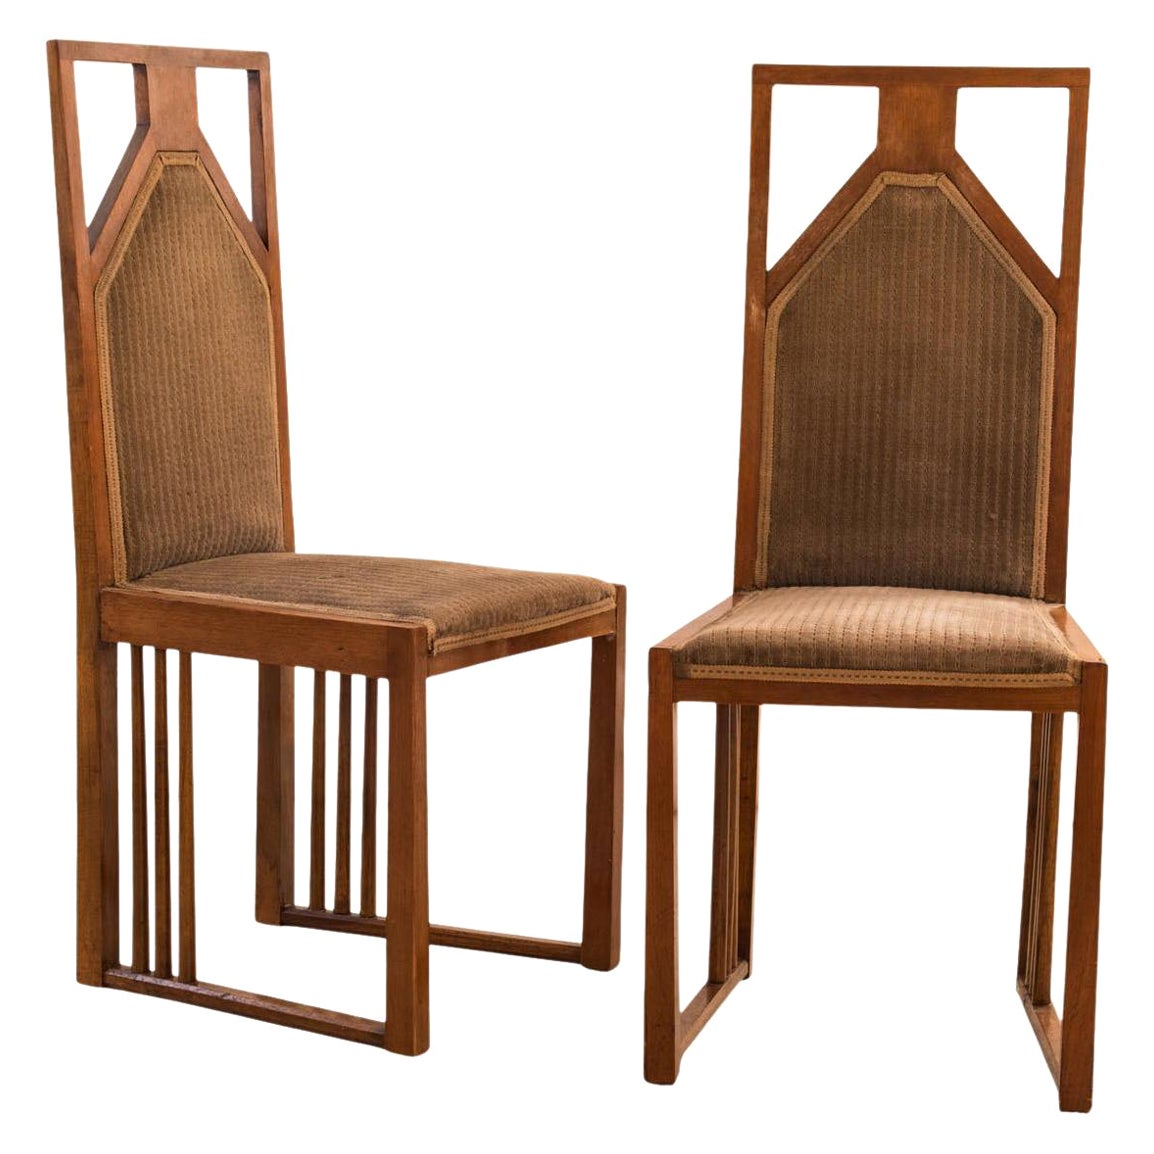 Josef Hoffmann Attr. Pair of Extraordinary Chairs 1905-10 Jugendstil Art Nouveau